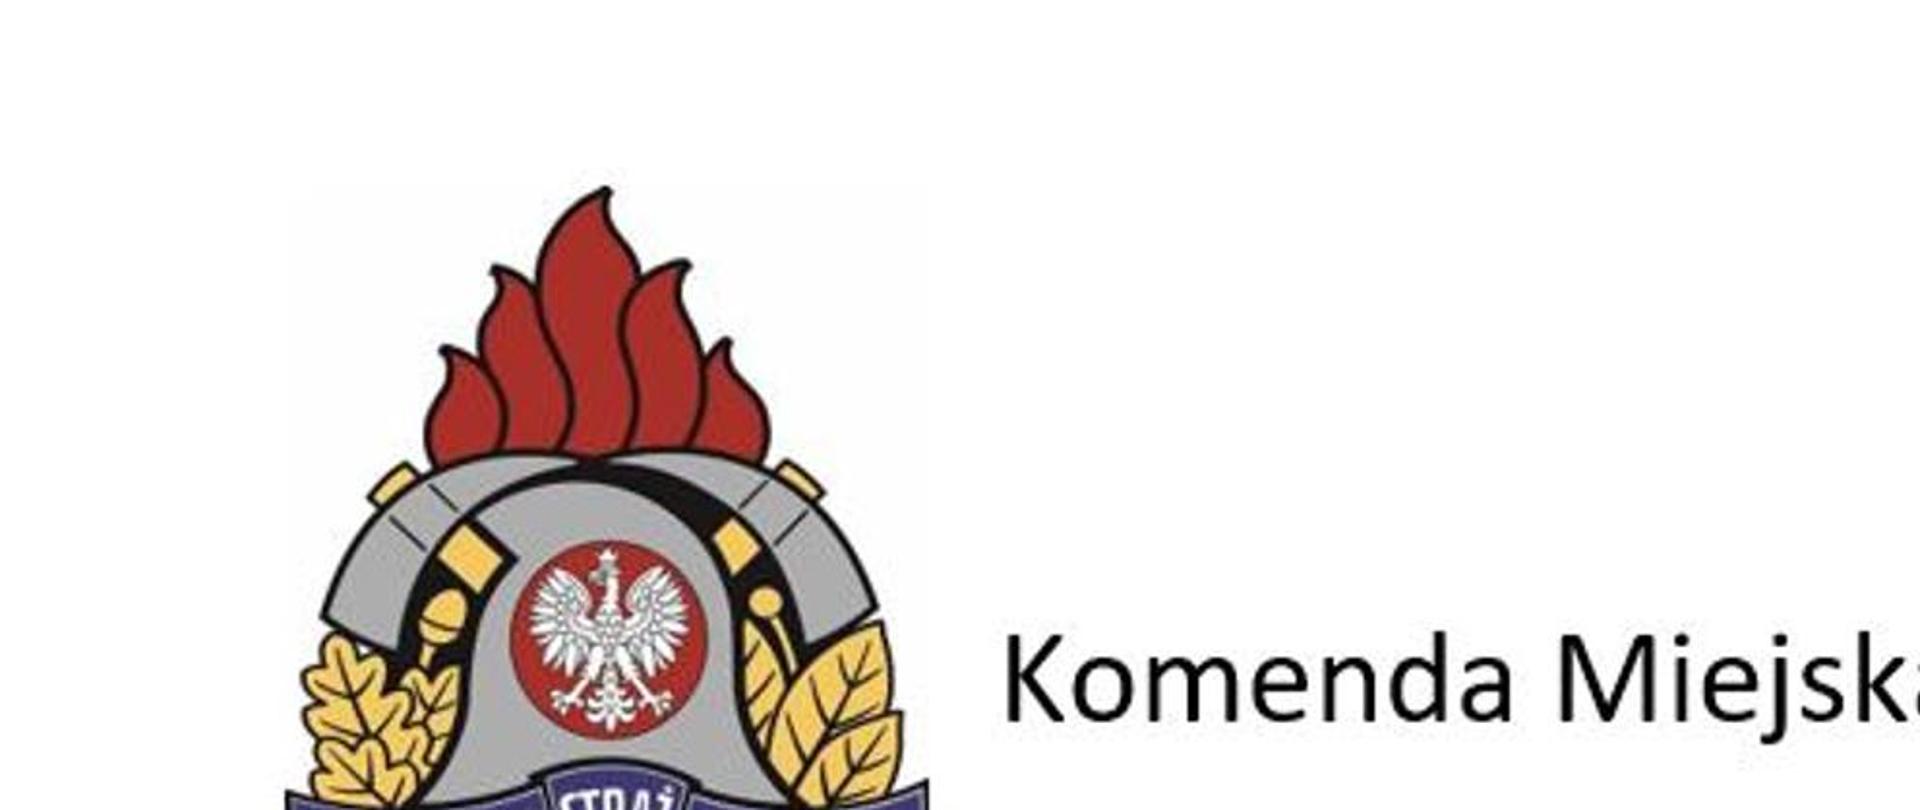 LOGO Państwowej straży pożarnej i napis Komenda Miejska
Państwowej Straży Pożarnej w Elblągu
